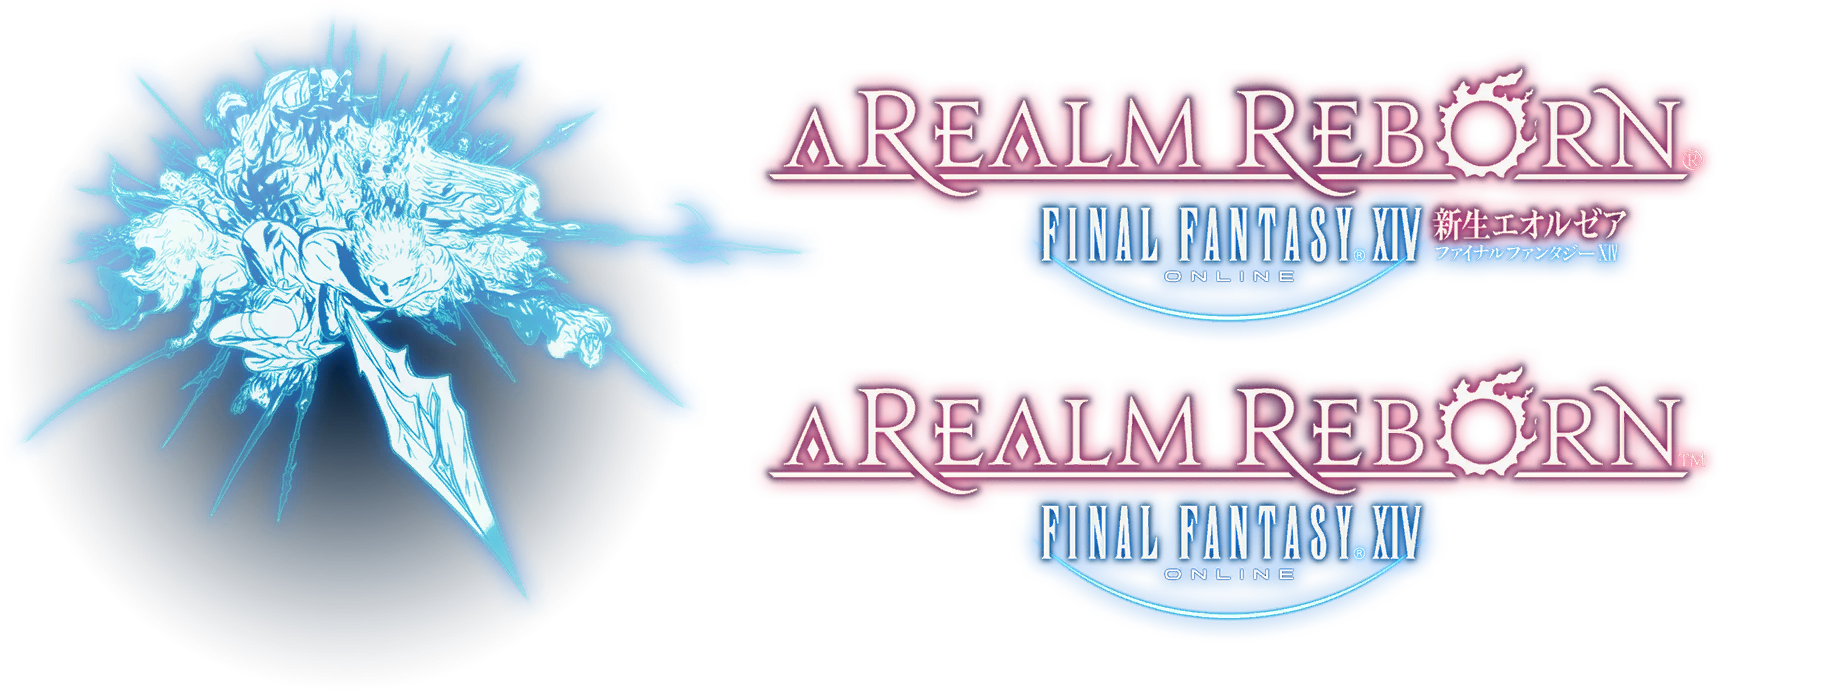 Final Fantasy XIV: A Realm Reborn - Title Logo